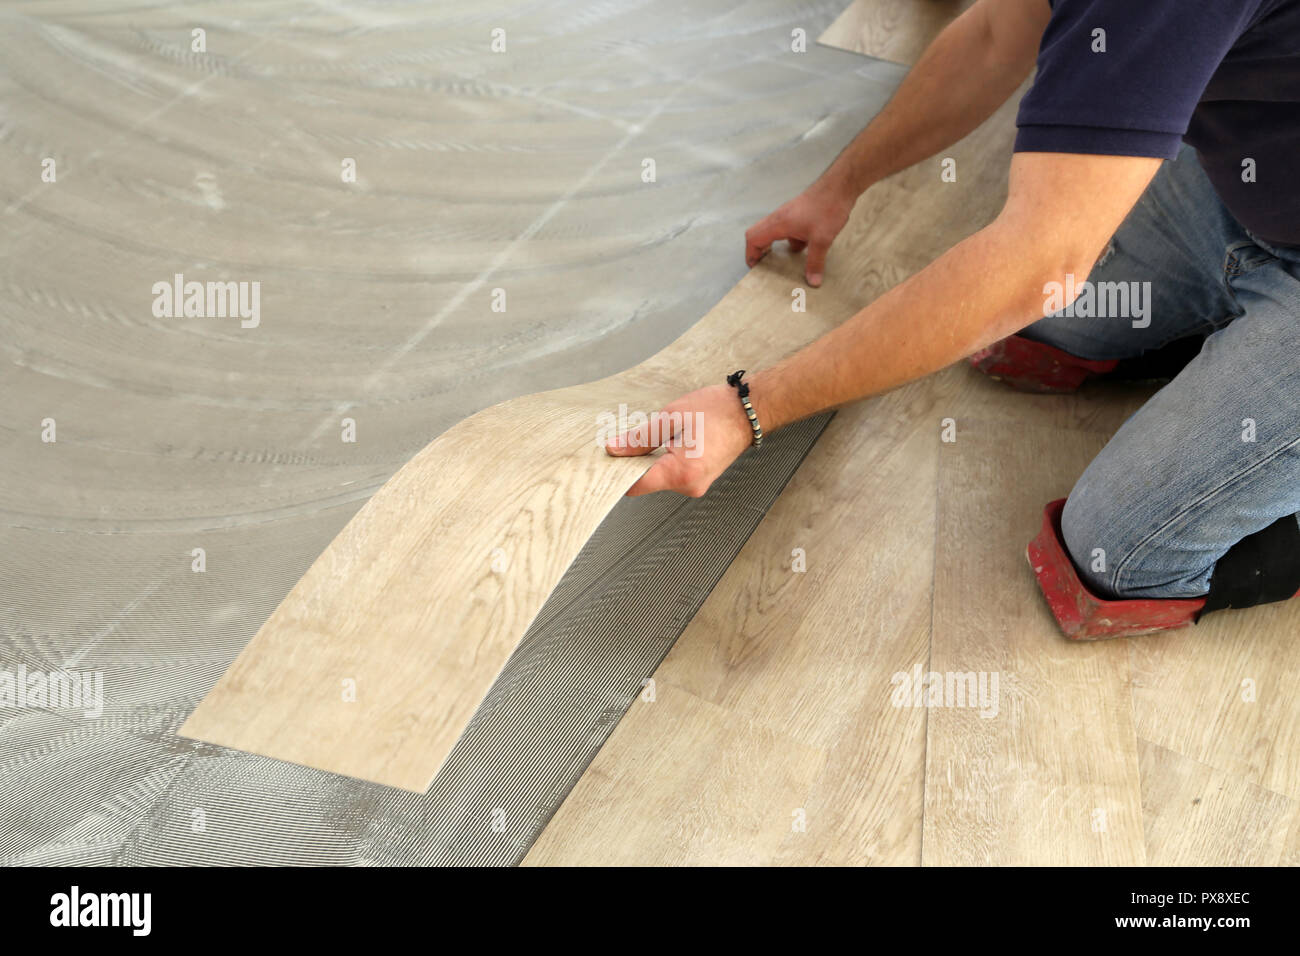 Worker Installing New Vinyl Tile Floor Stock Photo 222701876 Alamy